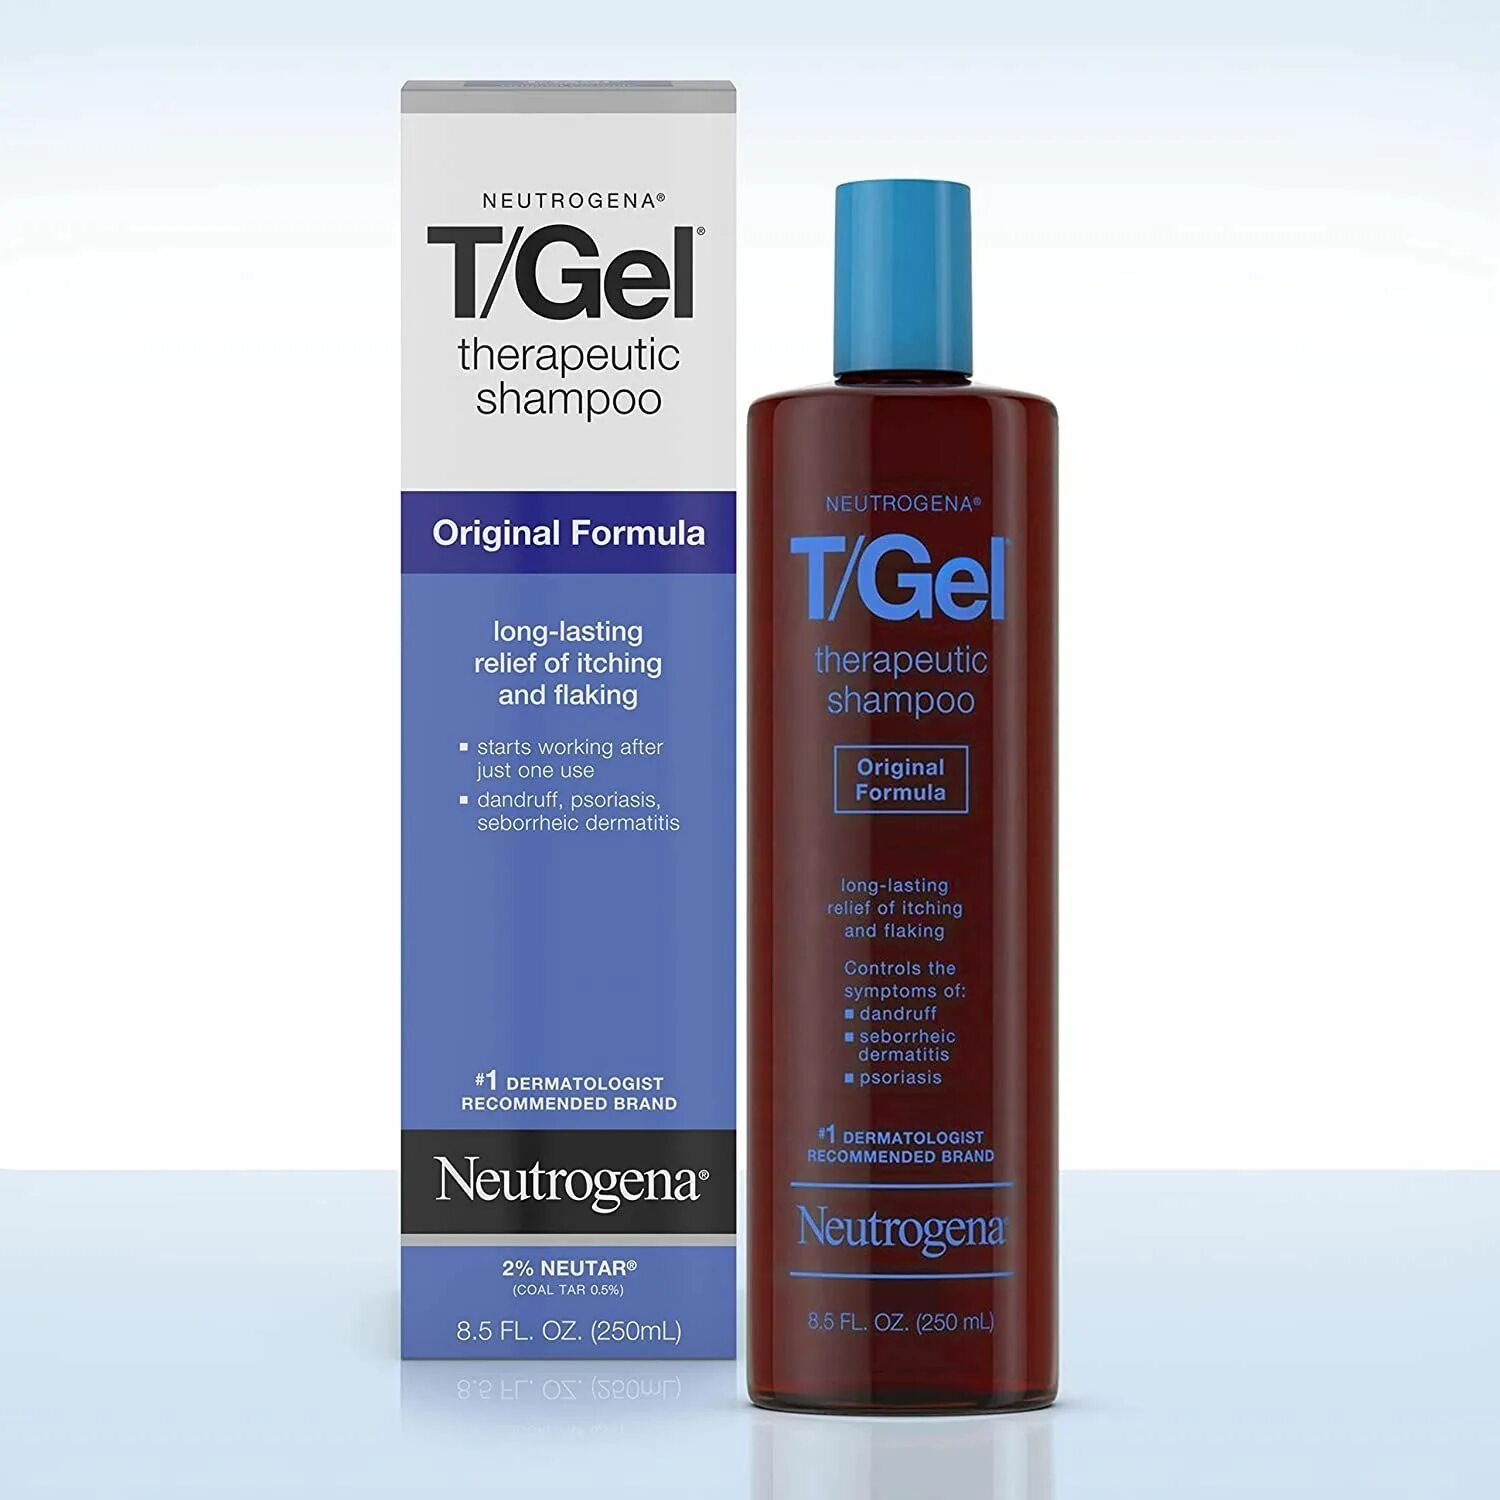 Neutrogena t/Gel Therapeutic Shampoo. Neutrogena shampooing t/Gel. T Gel Neutrogena шампунь. Neutrogena t Gel ( Extra strength).